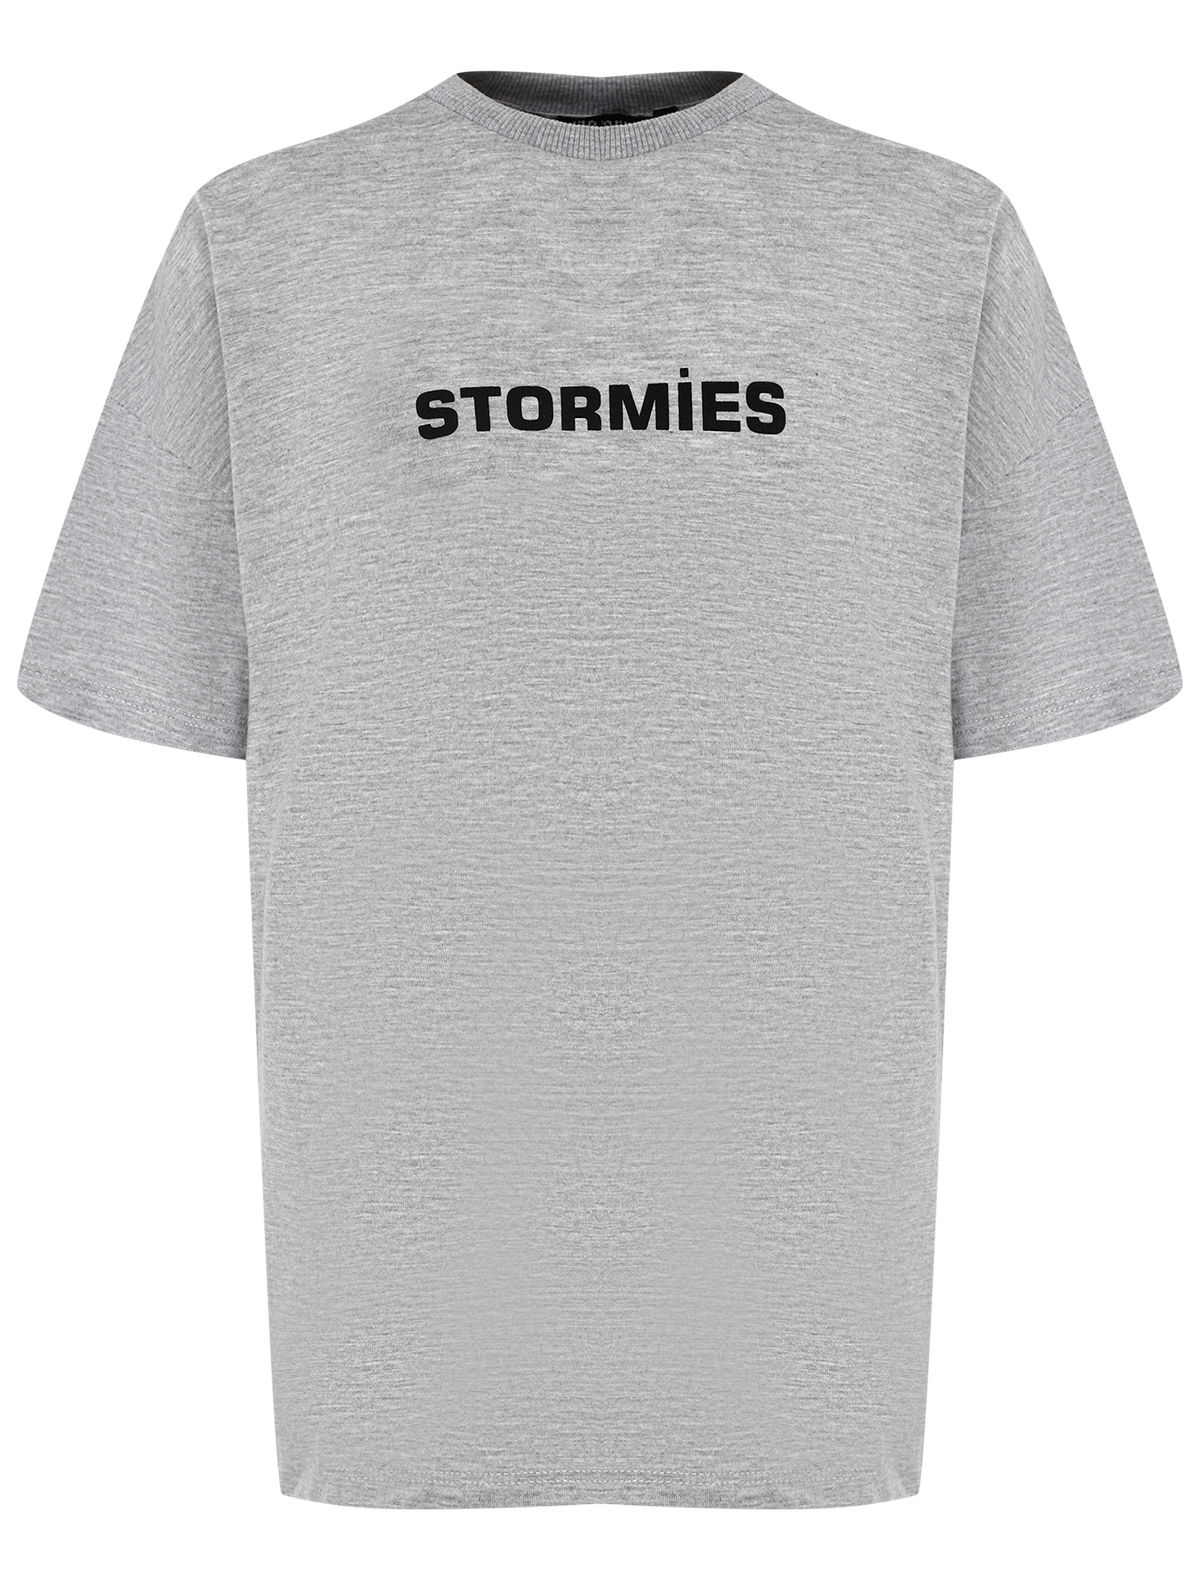 Футболка Stormies 2615498, цвет серый, размер 11